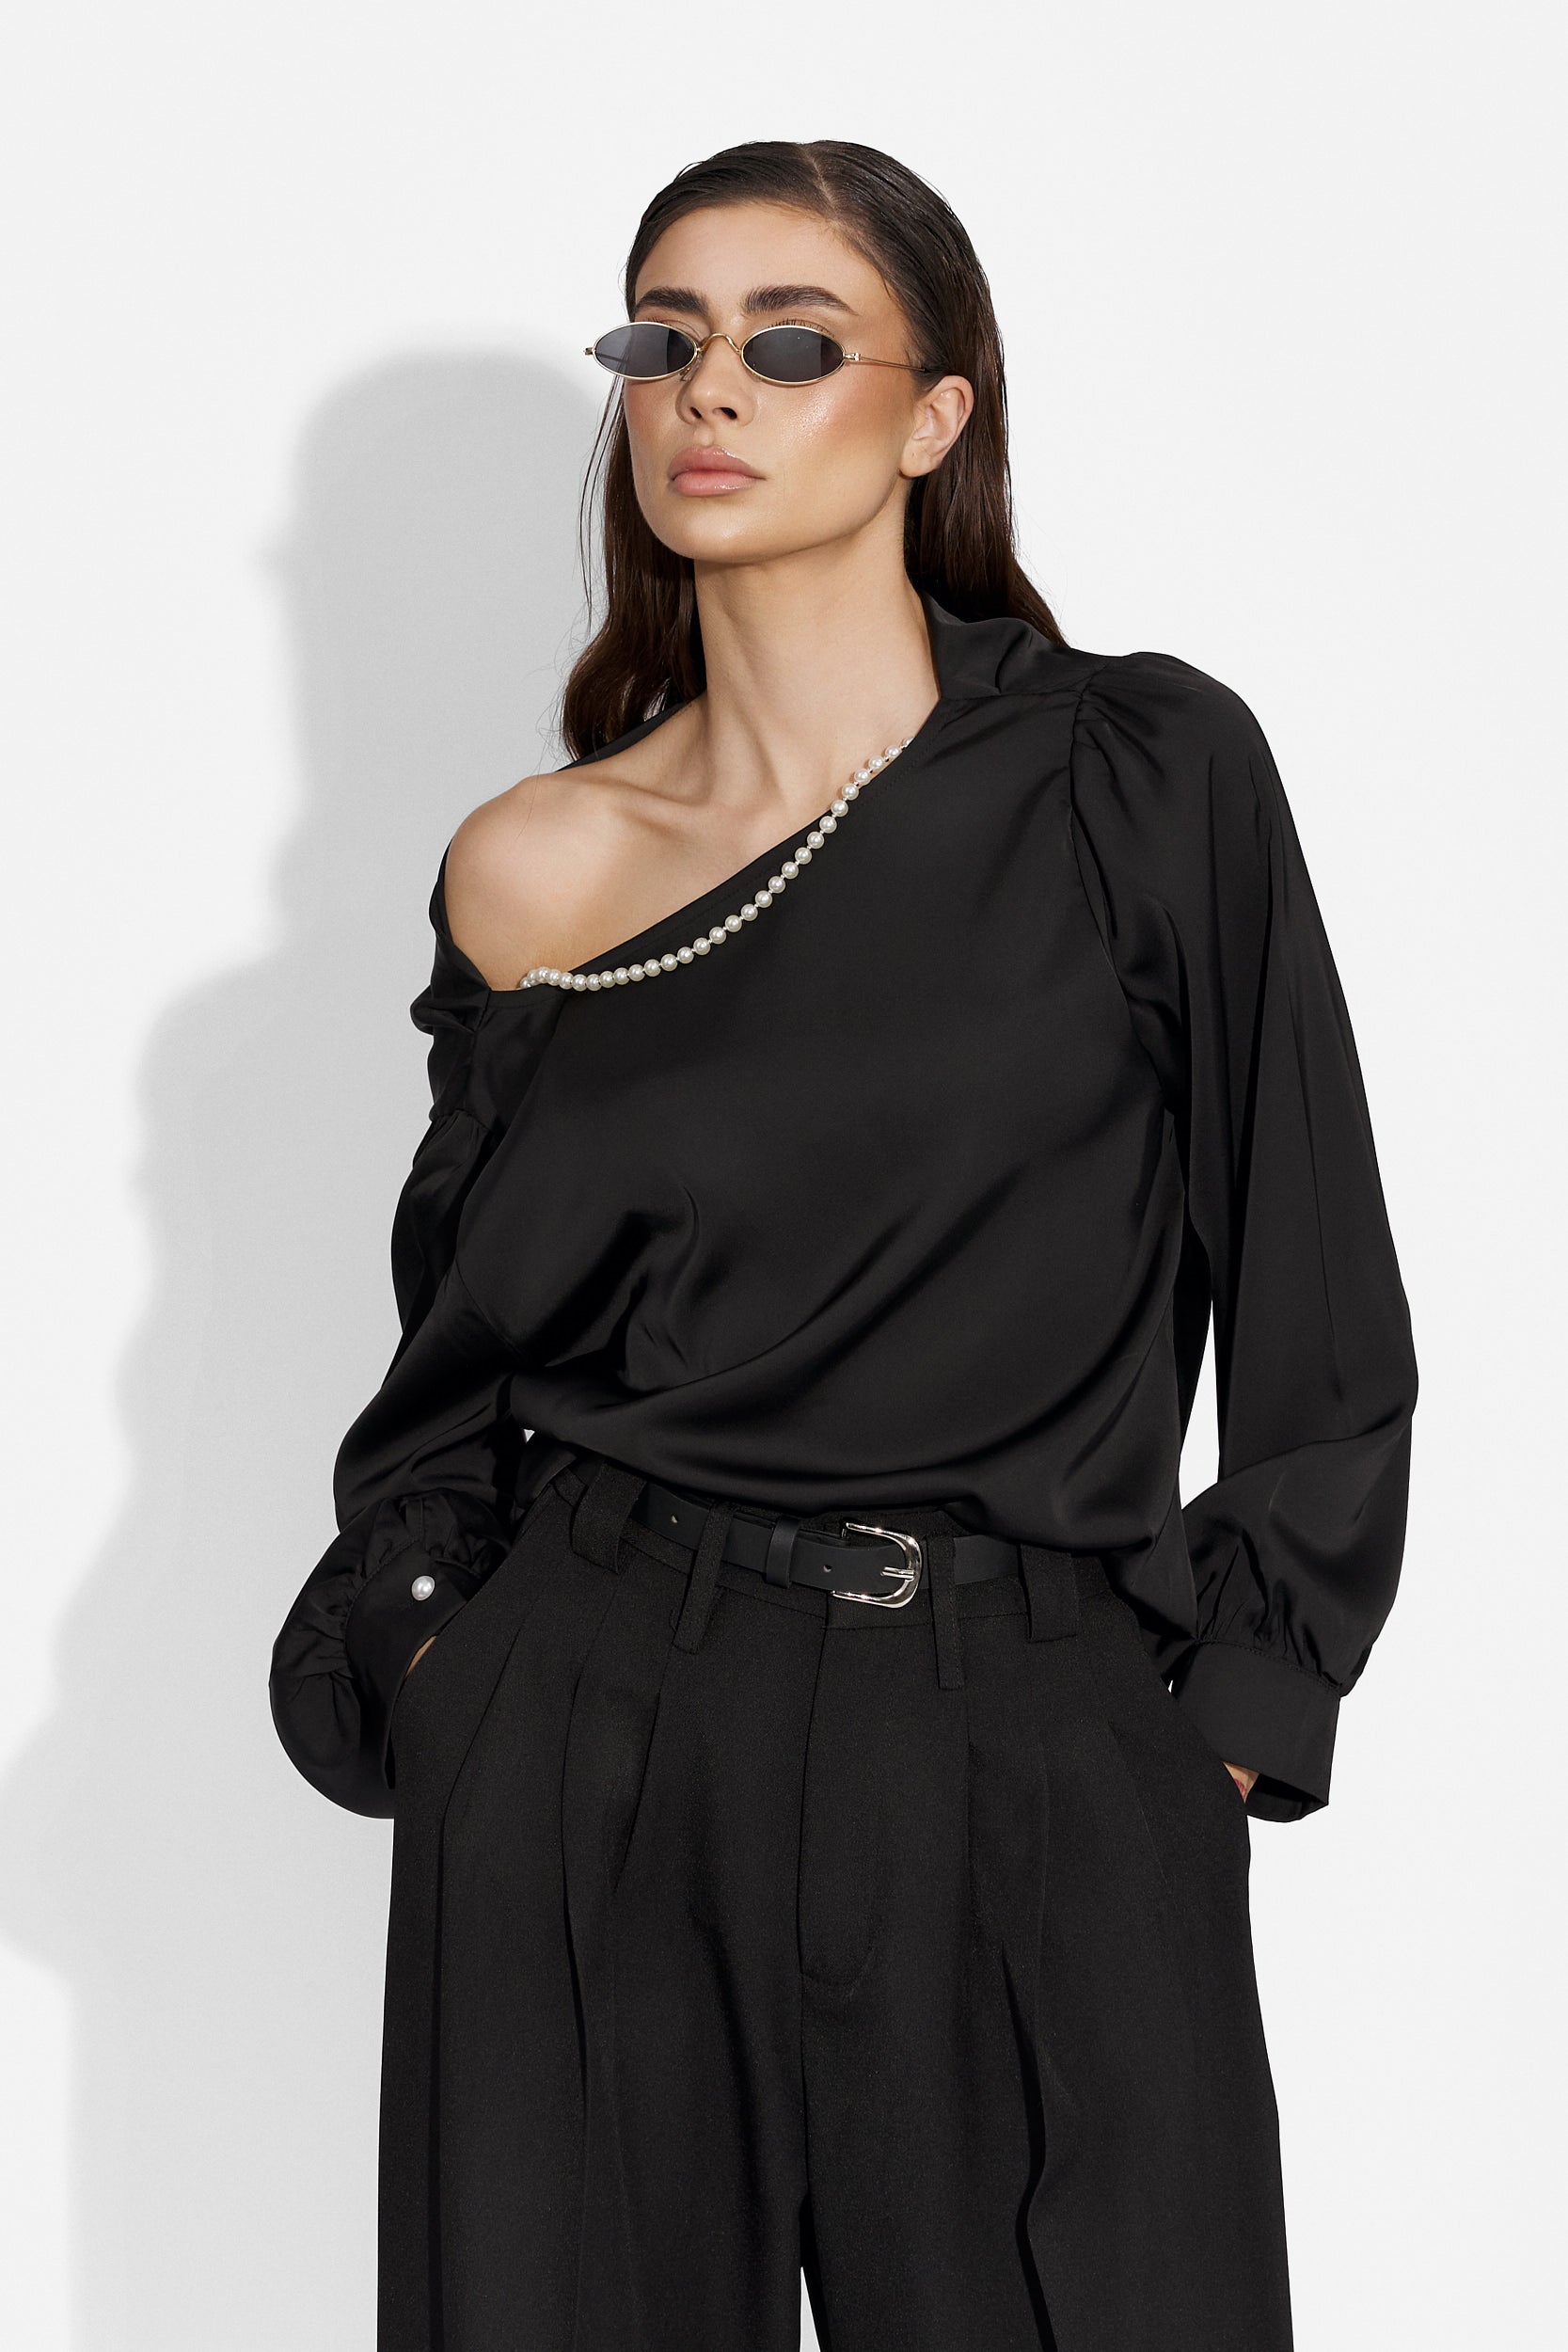 Elegant black ladies shirt Anea Bogas